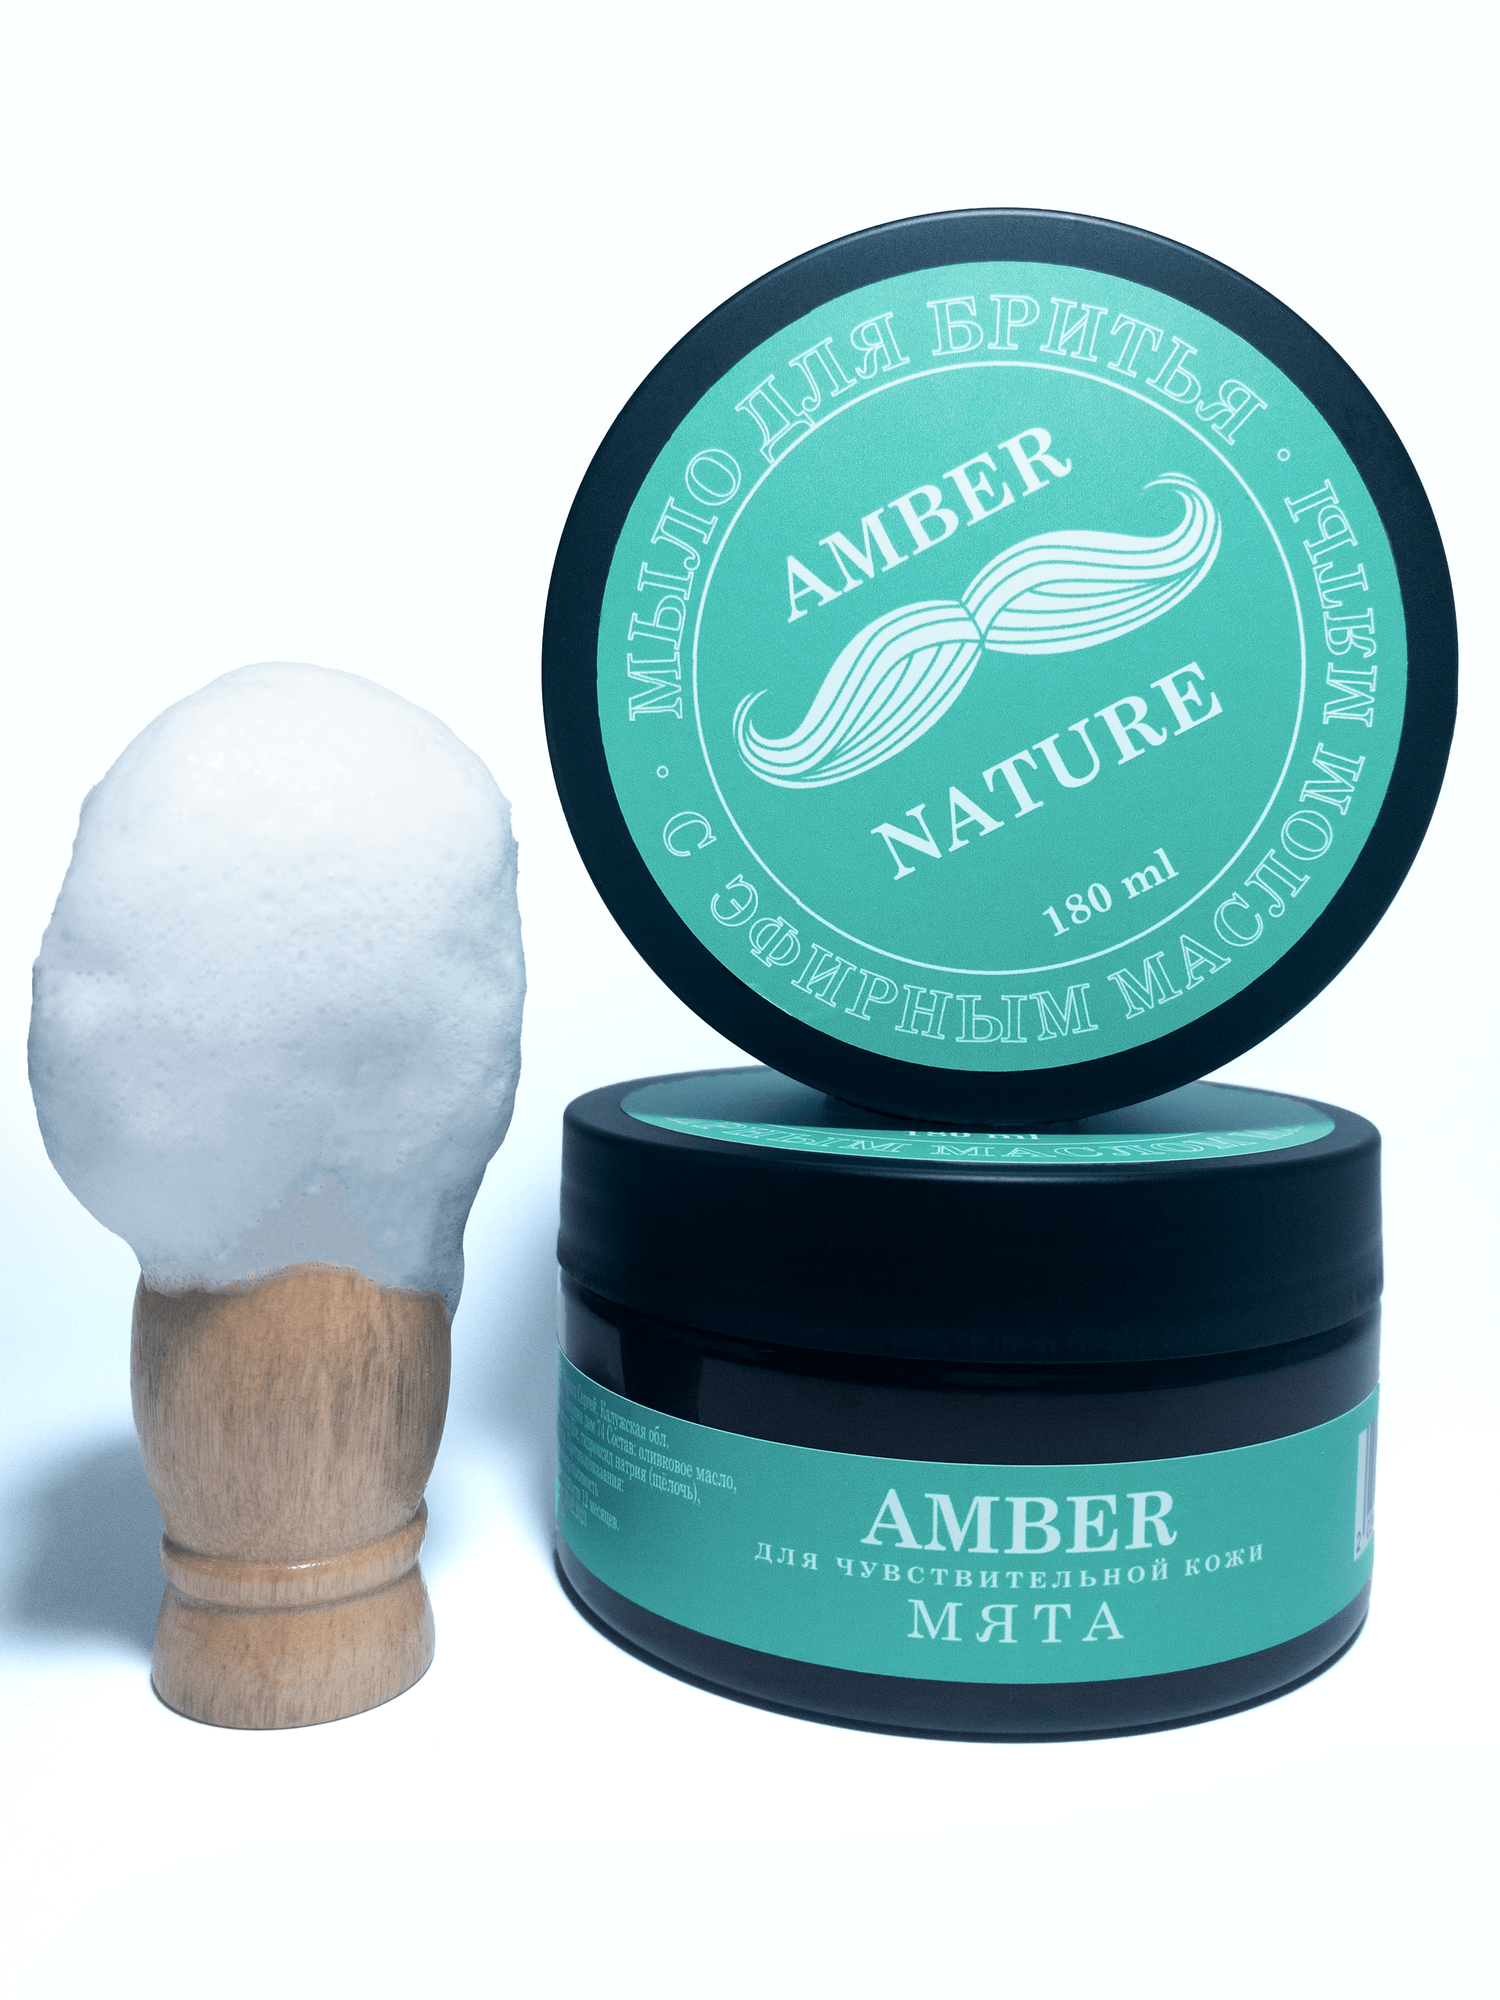 Amber Мыло для бритья натуральное с эфирным маслом мяты 180 гр.